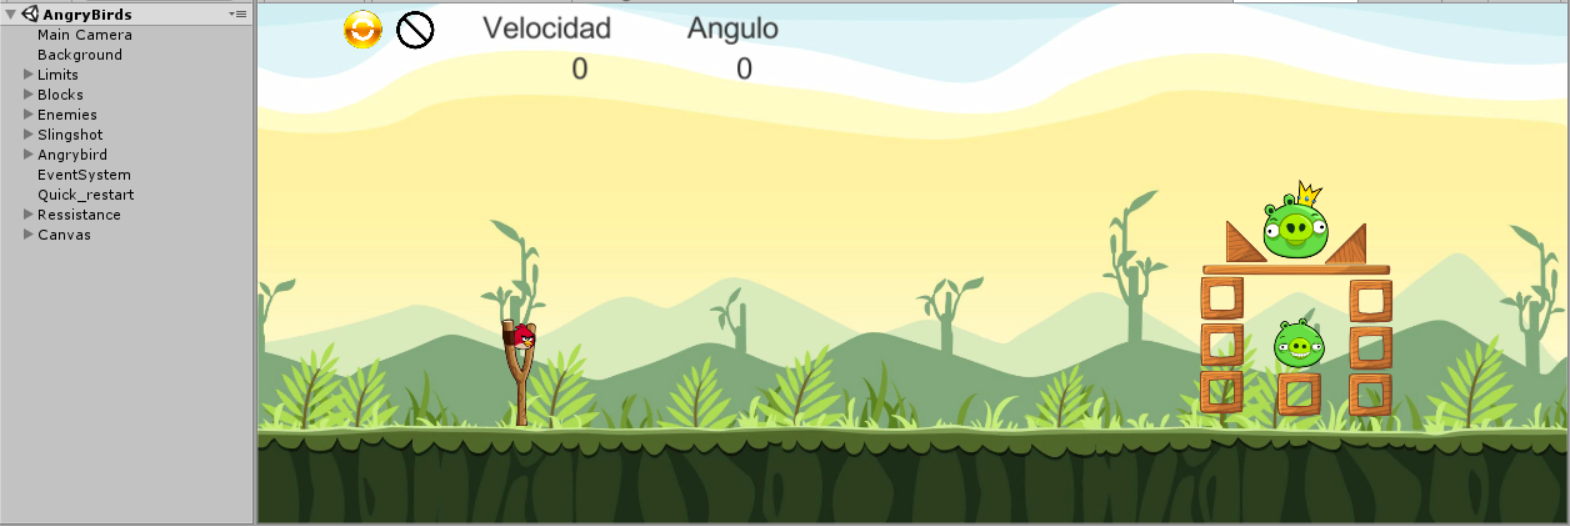 Aplicación interactiva estilo “Angry Birds”